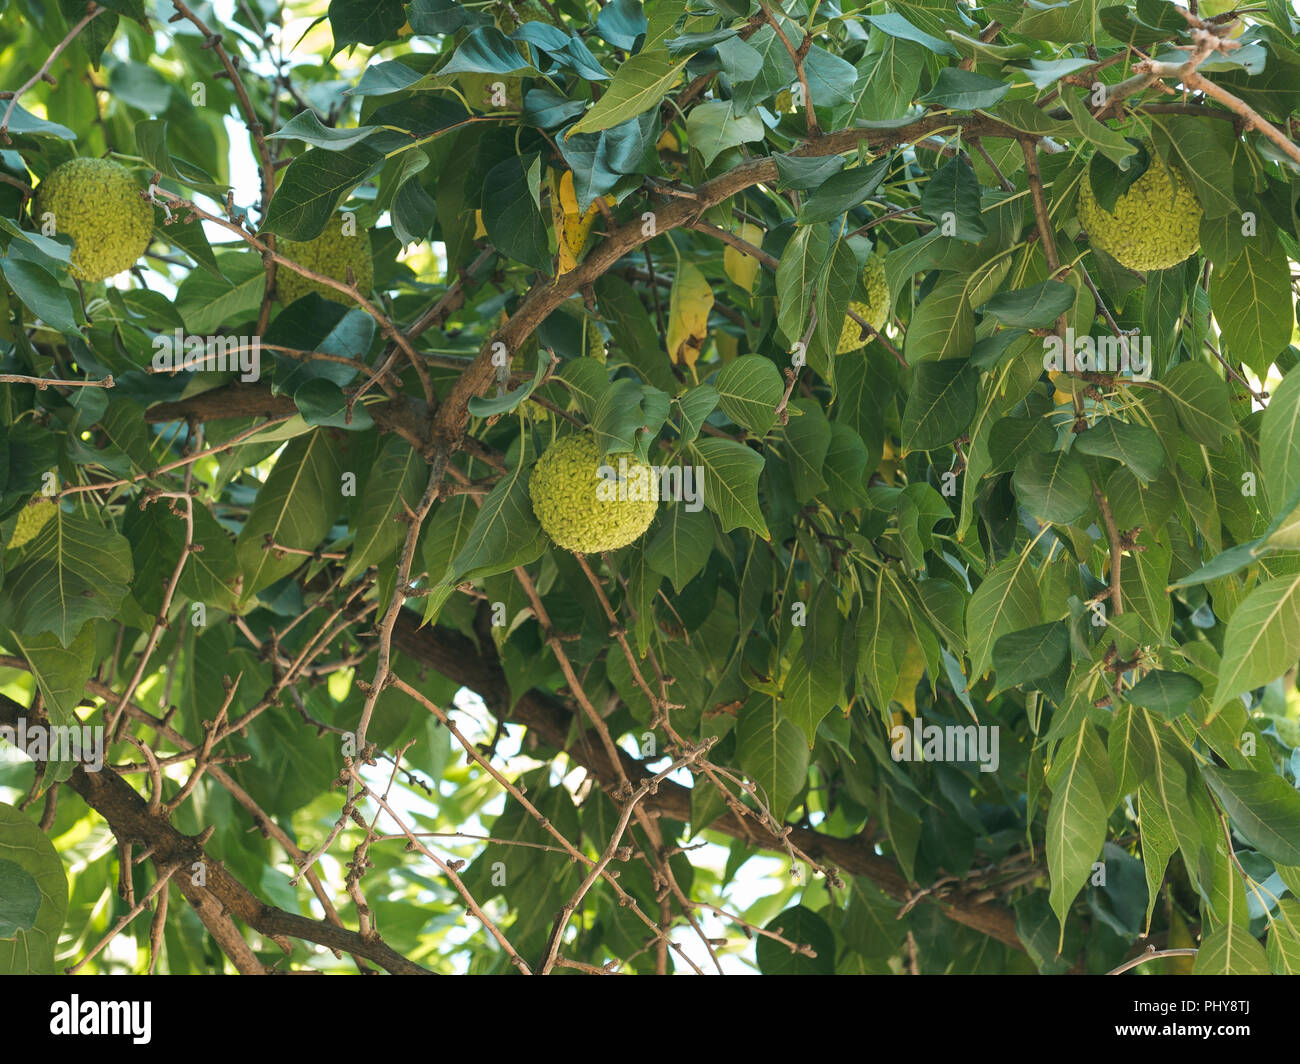 Grüne Früchte von maclura pomifera Osage orange, Apple, Adam's Apple im Wilden am Baum wachsen. Maclura Früchte in der alternativen Medizin, insbesondere für die Behandlung von Gelenken und Ischias. Platz kopieren Stockfoto